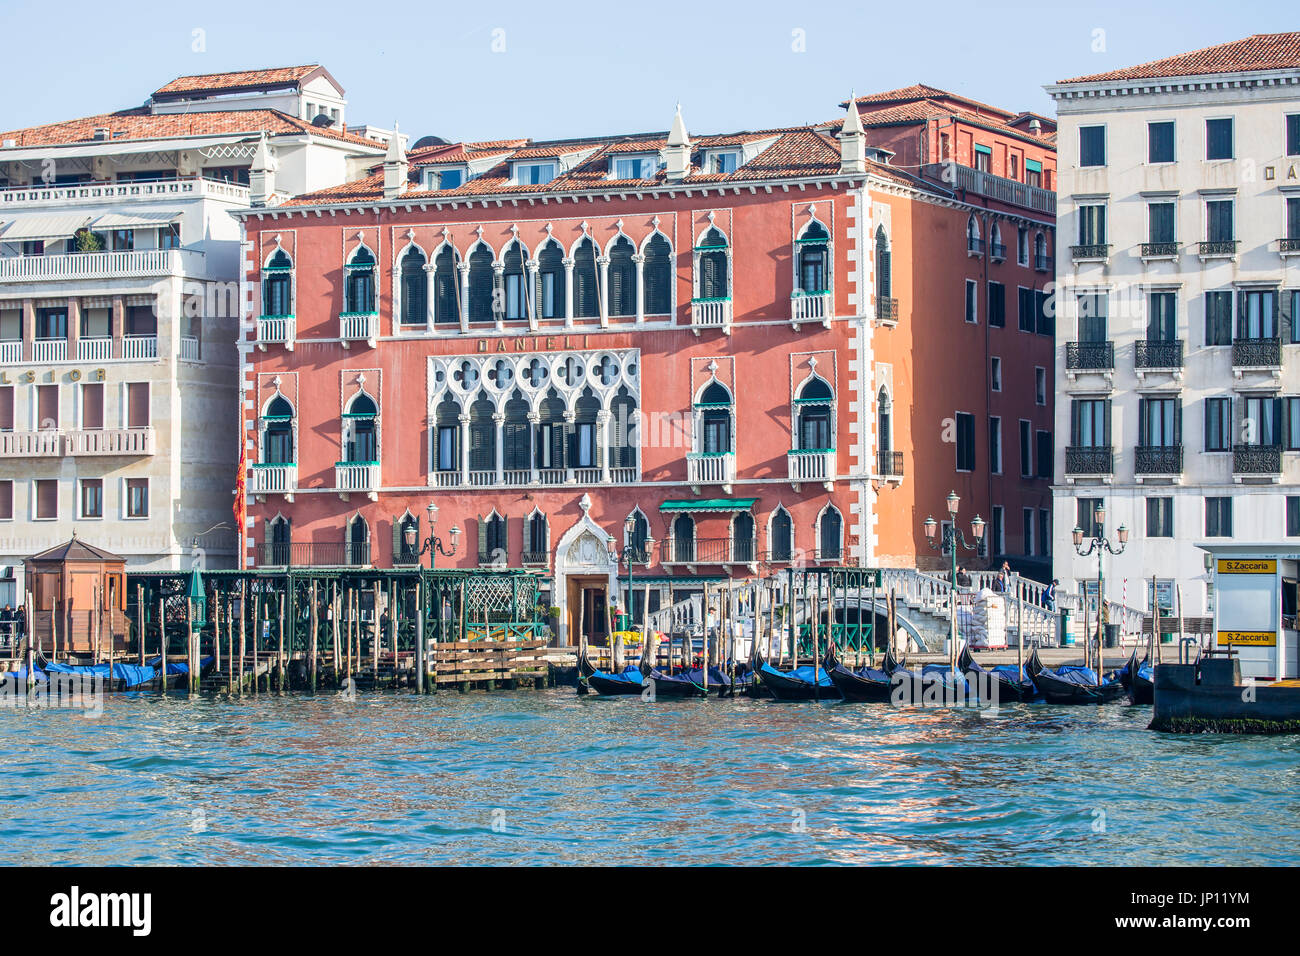 Venice, Italy - April 27, 2012: Hotel, houses and gondolas, from the Lagoon, Venice, Italy. Stock Photo